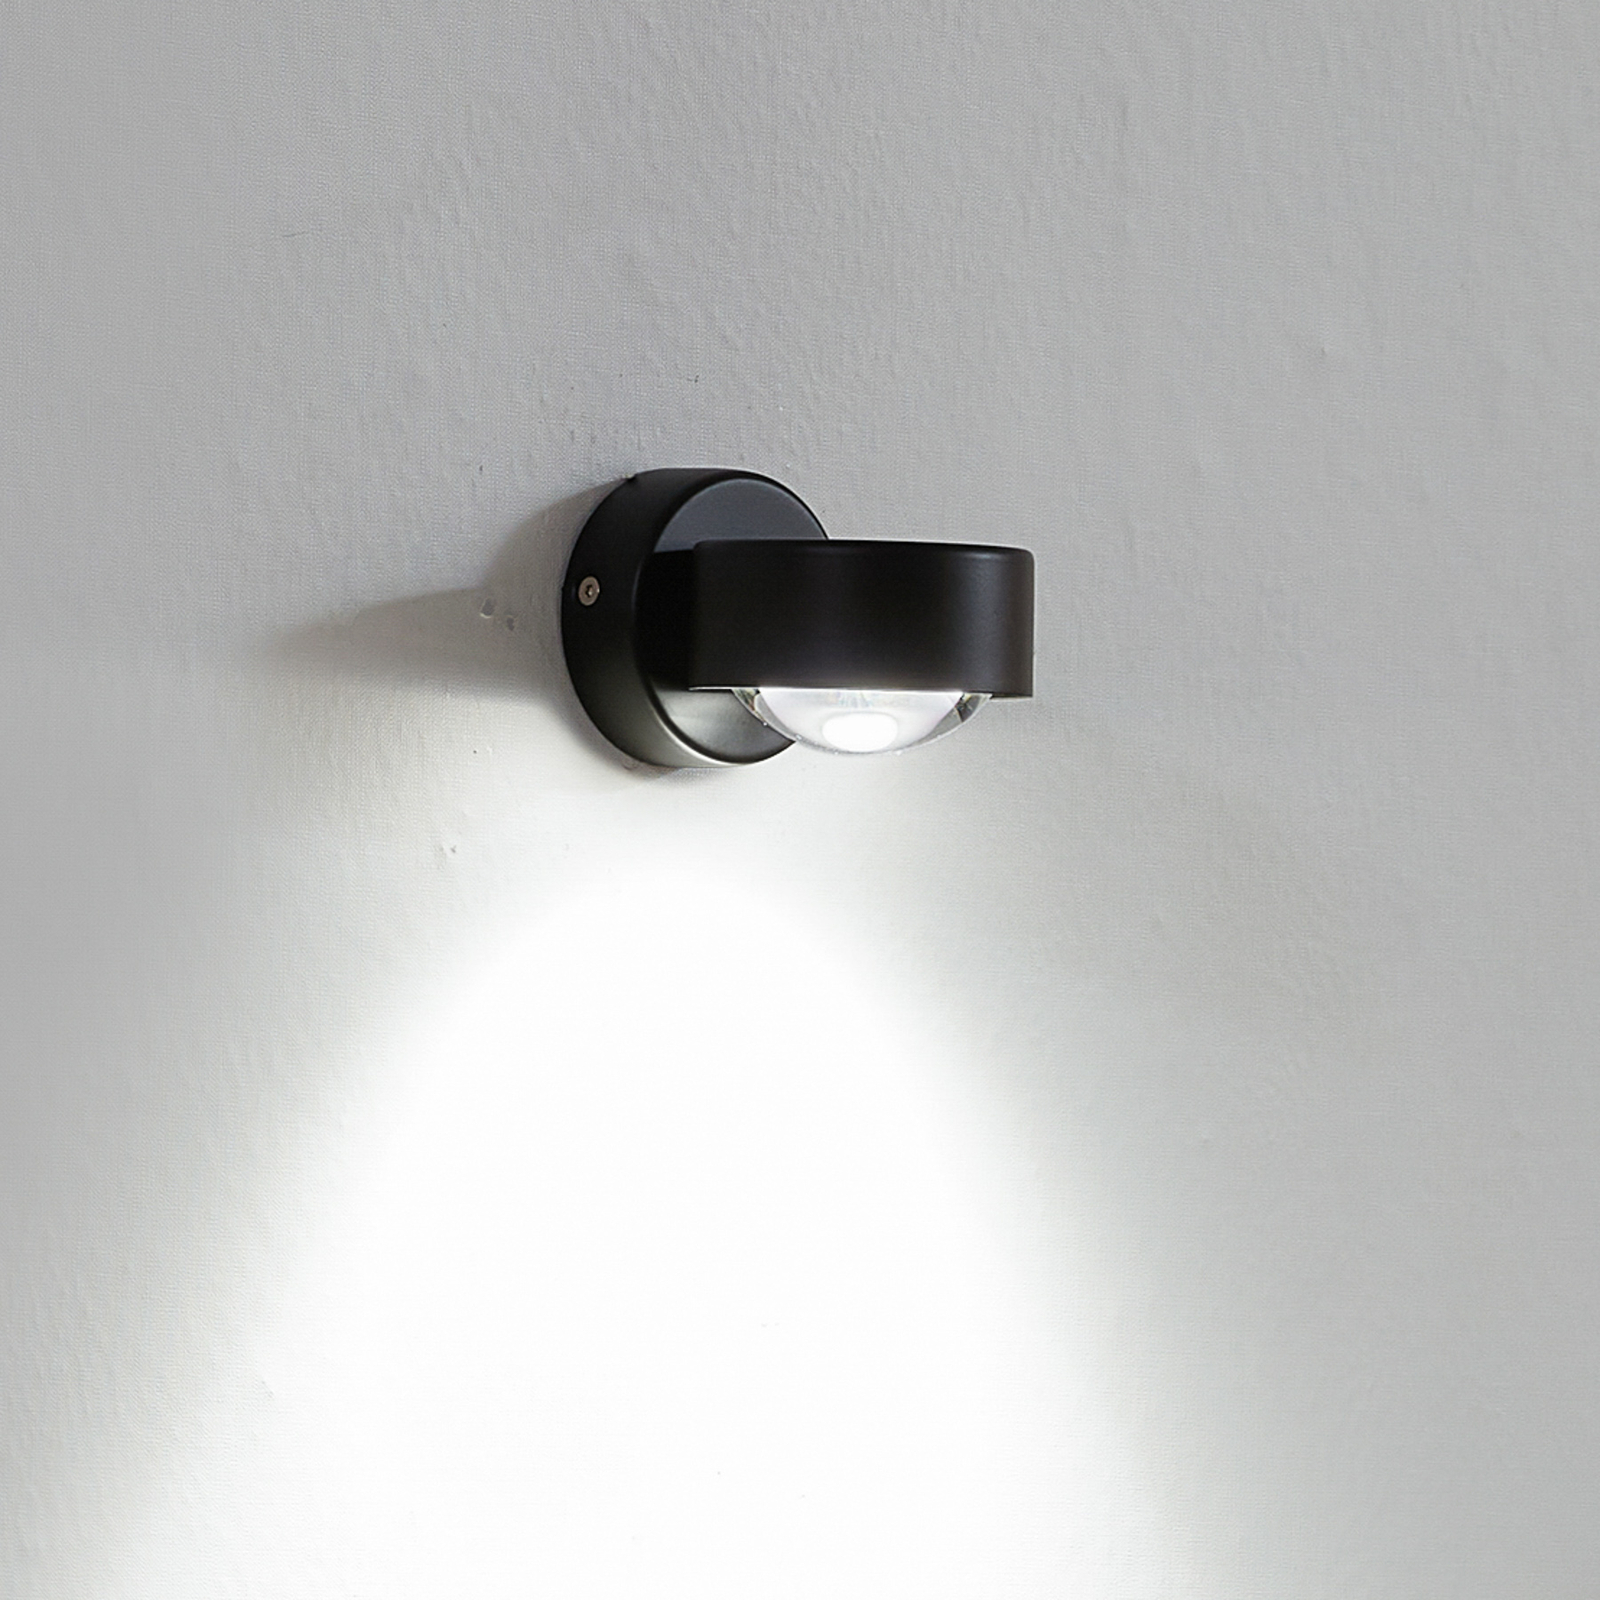 Jyla wall spotlight, black, 3,000 K, socket below